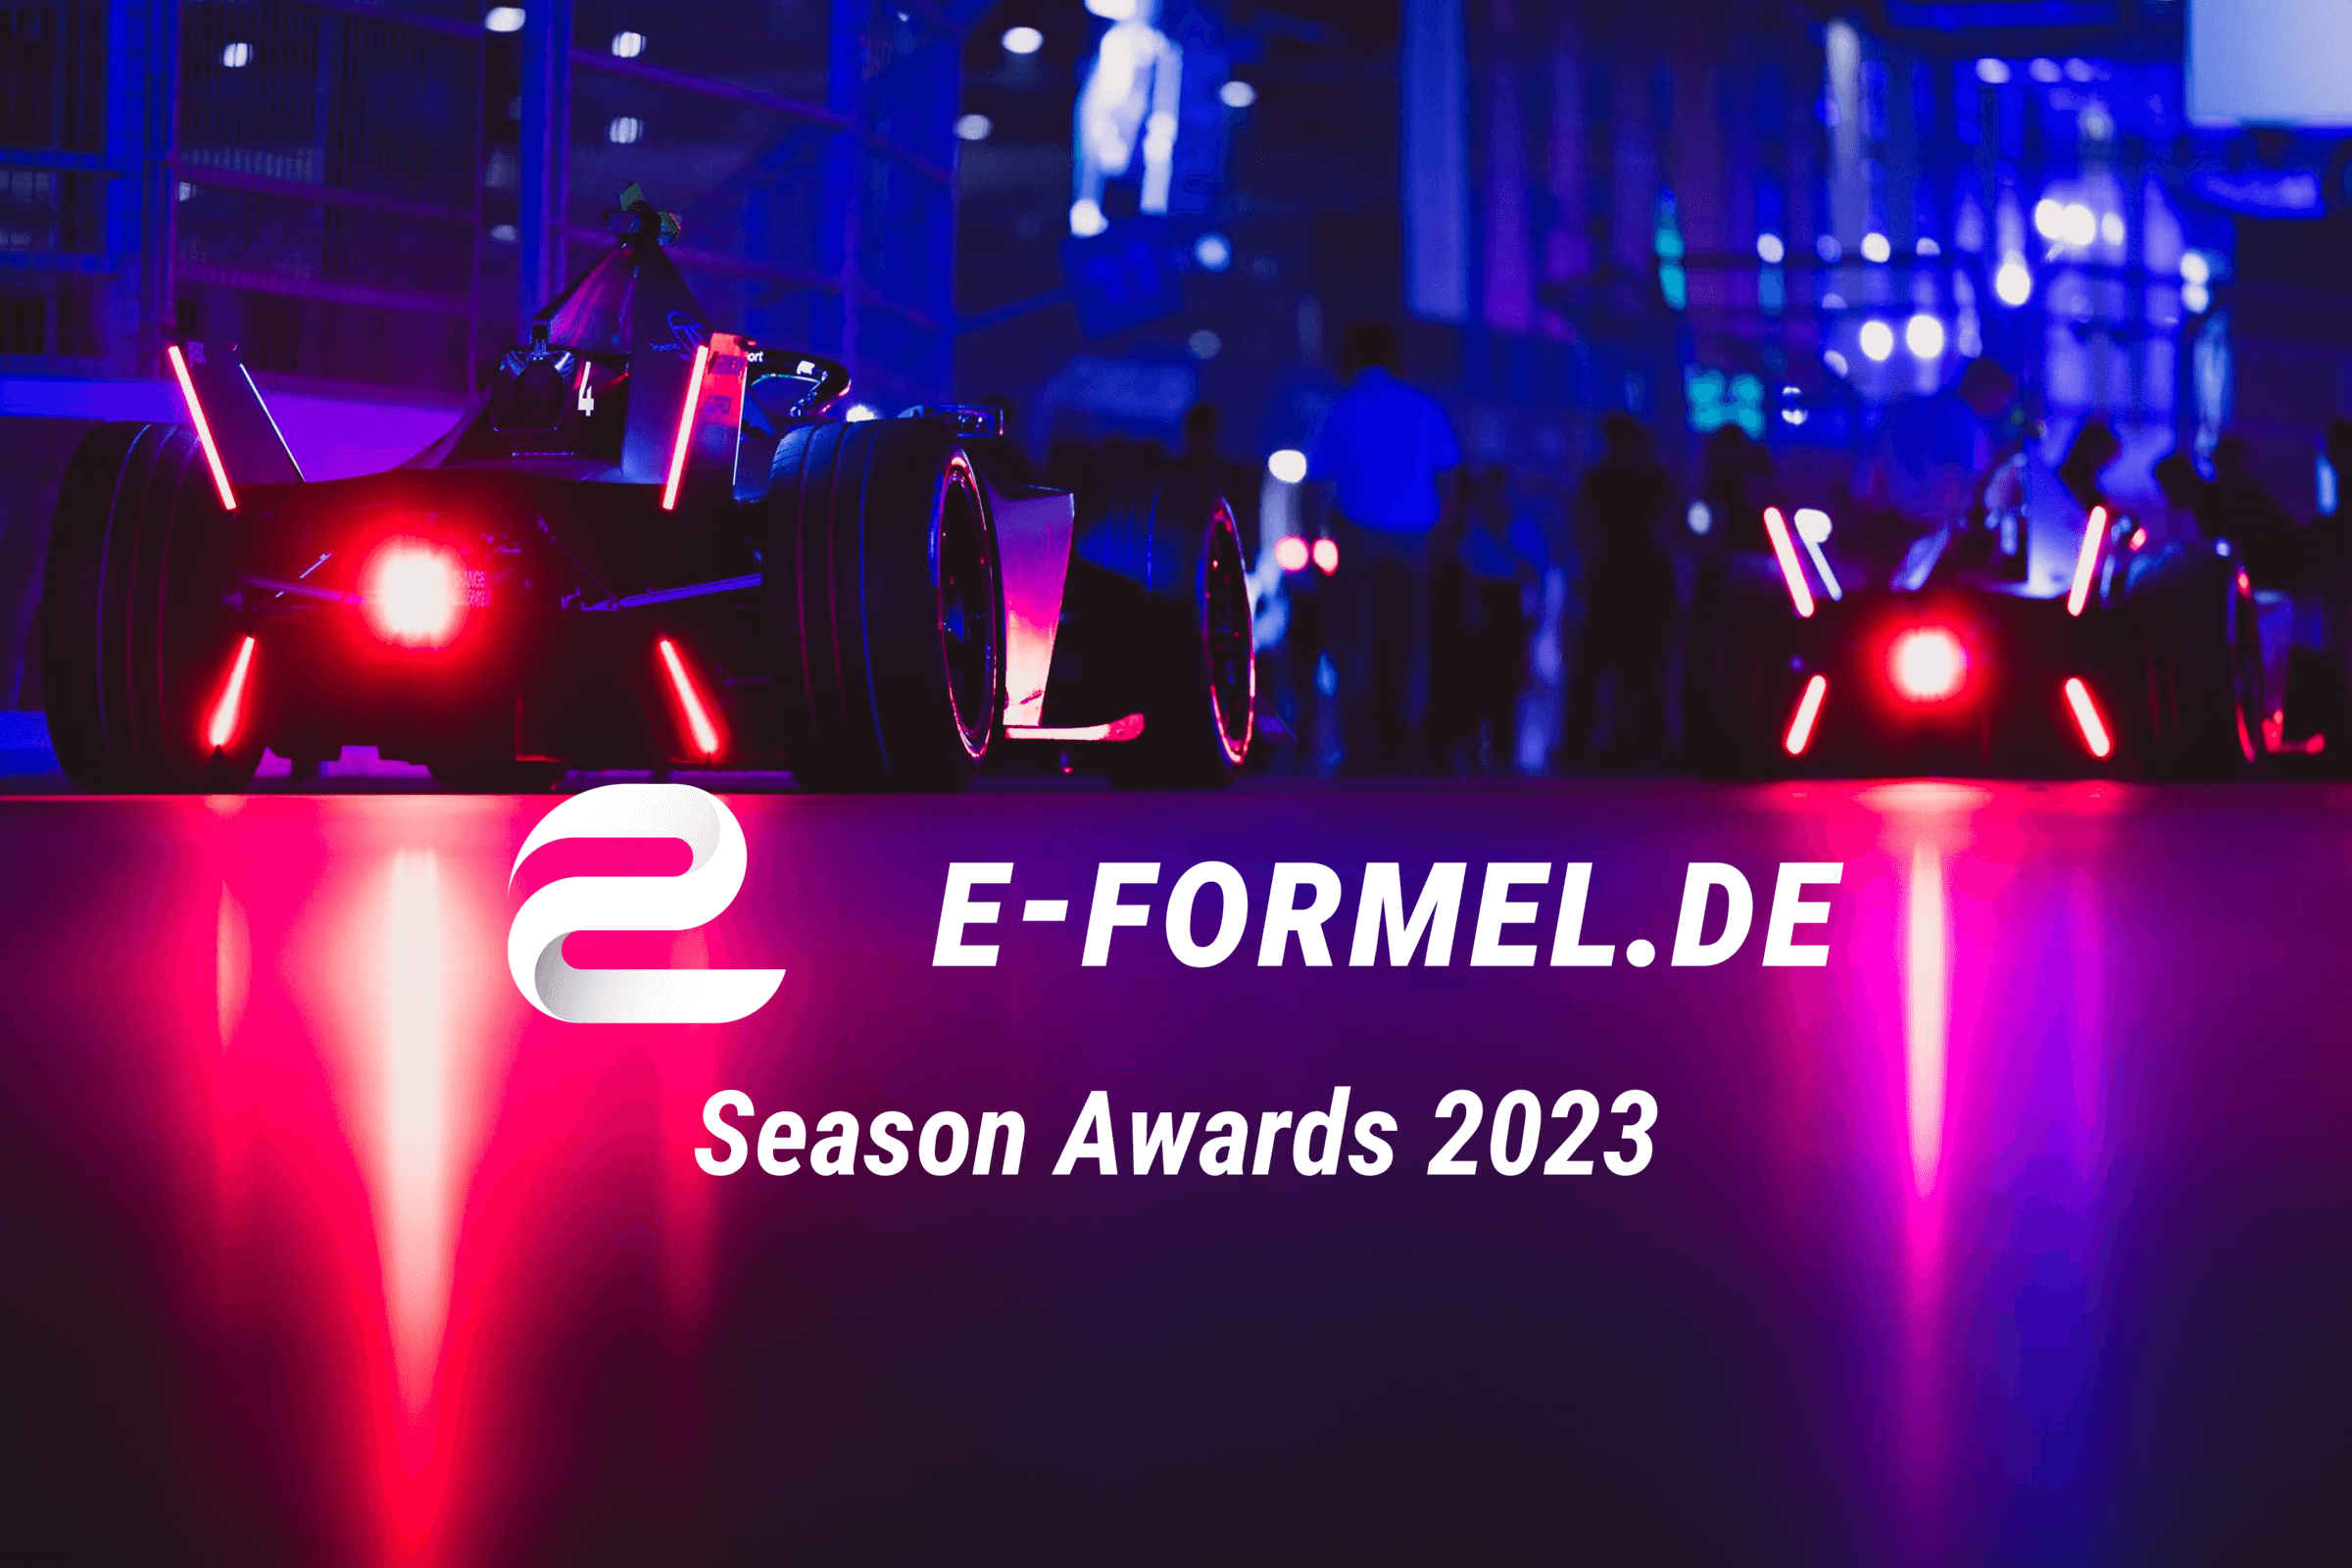 e-Formel.de Season Awards 2023: Jake Dennis & Mitch Evans je zweifach mit Gold ausgezeichnet